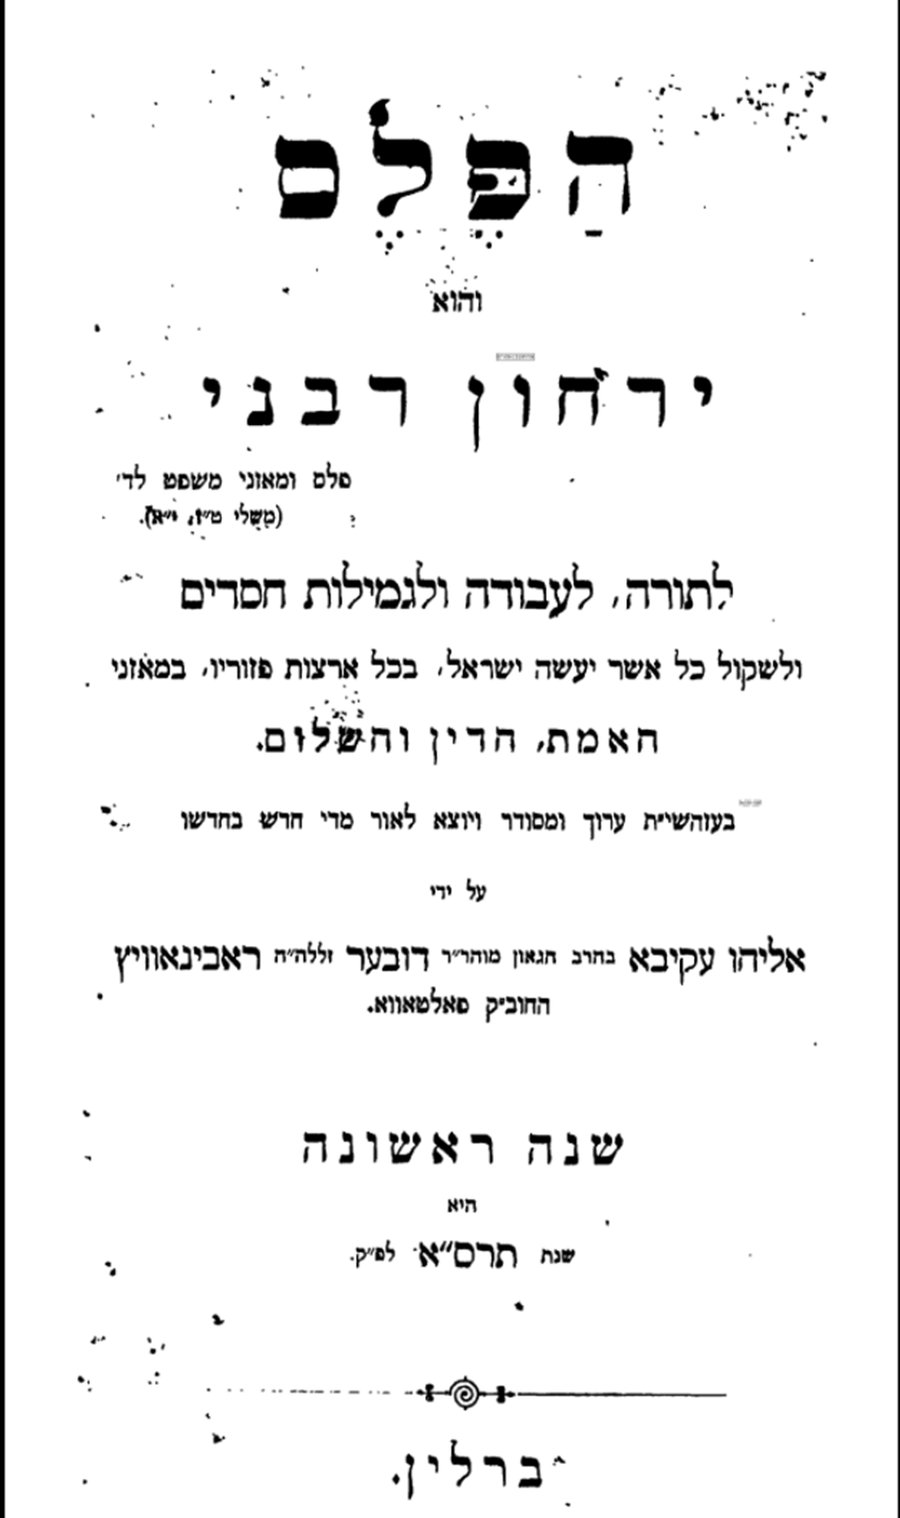 הגלגול הראשון של "הפלס", שהודפס בידי הרב רבינוביץ לאחר שפרש[1] מהקונגרס הציוני השני בנשיאות הרצל